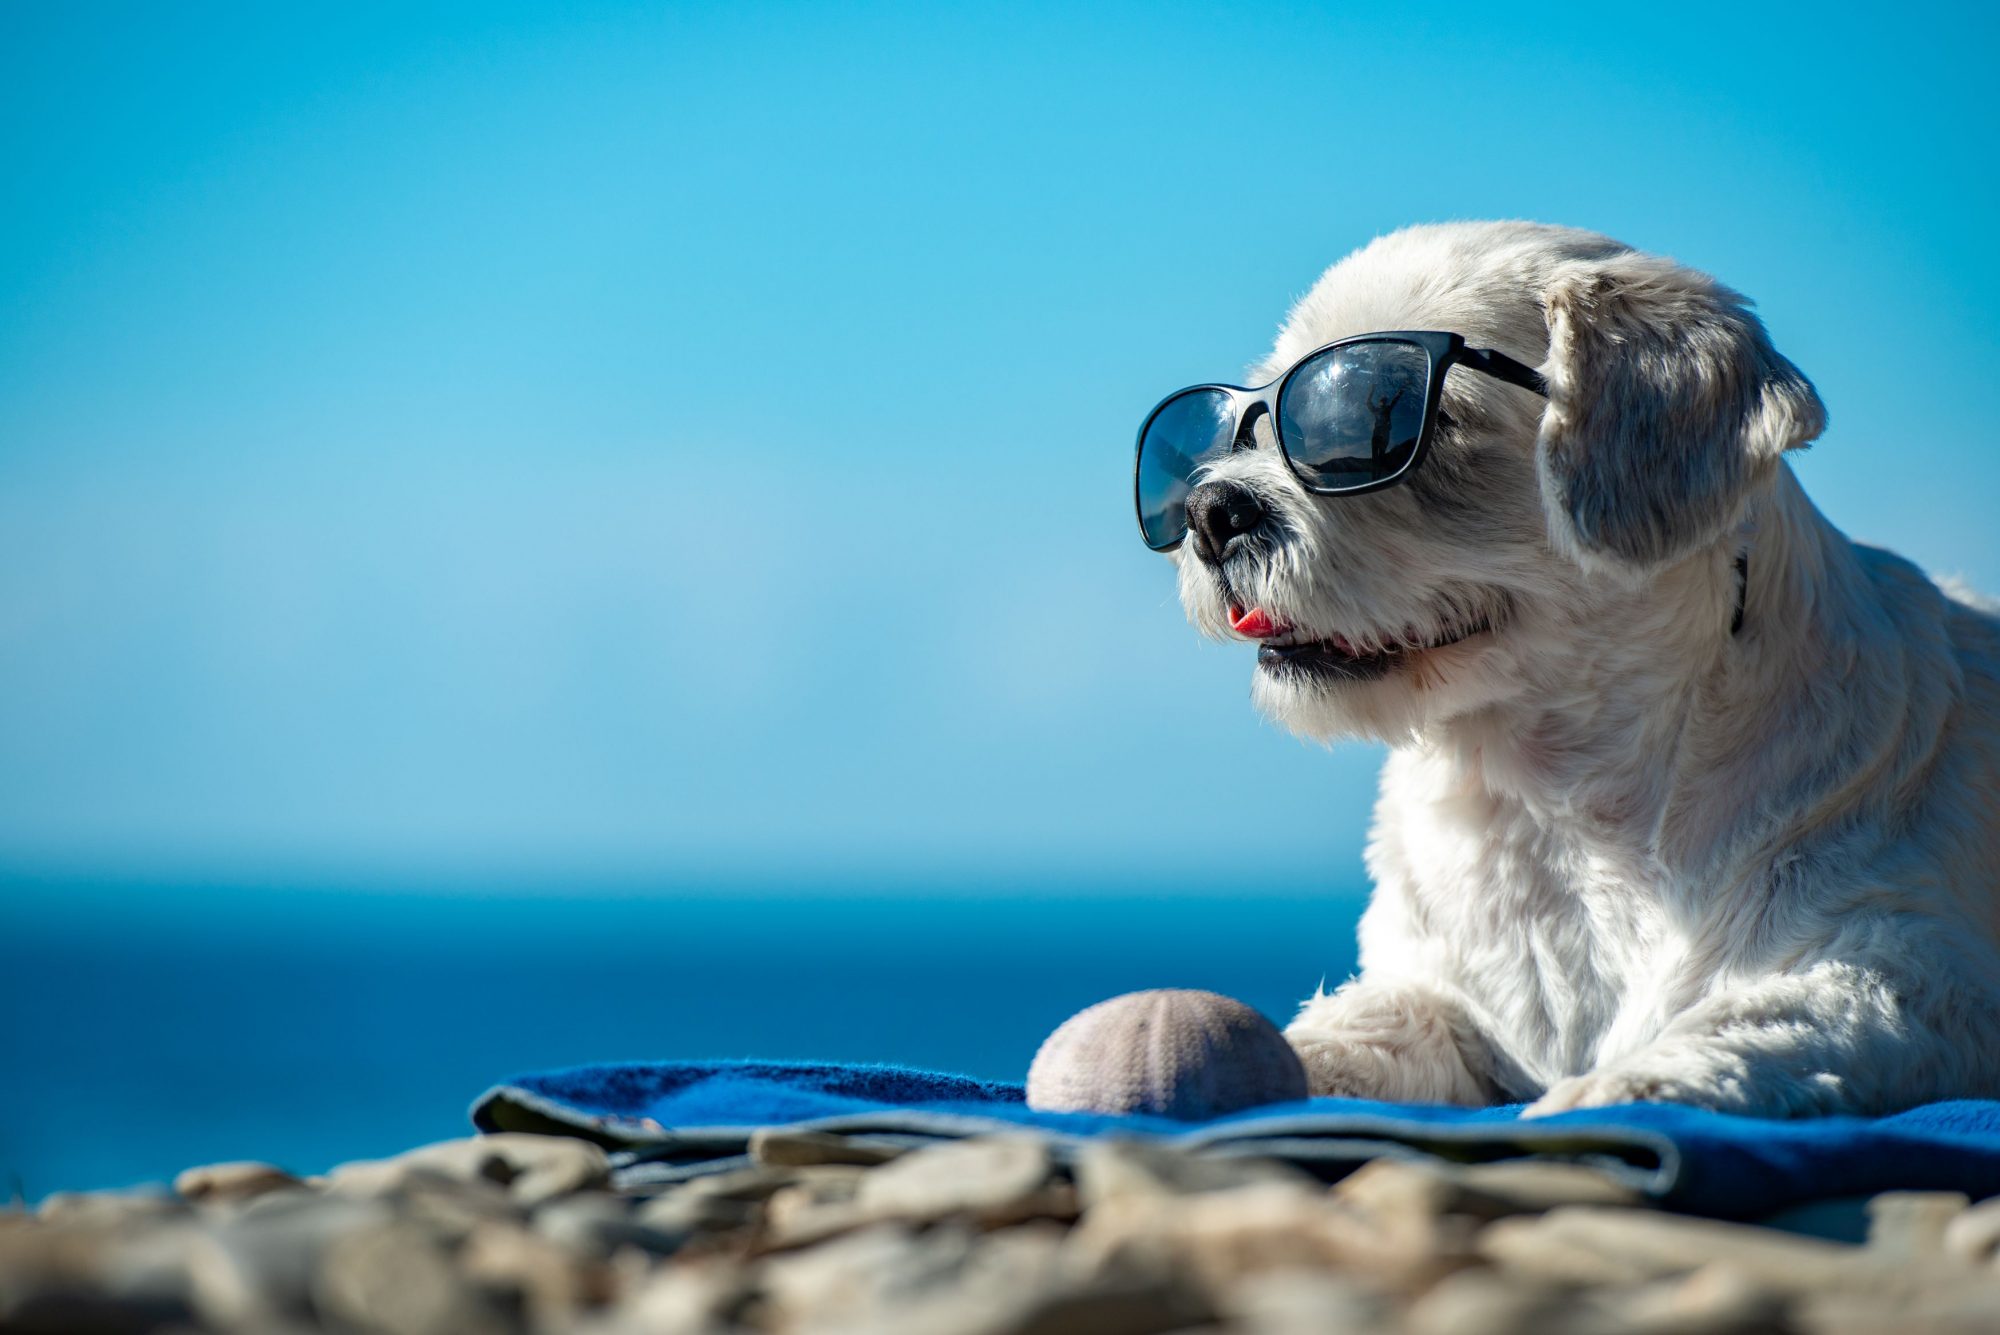 Cute dog on the beach.